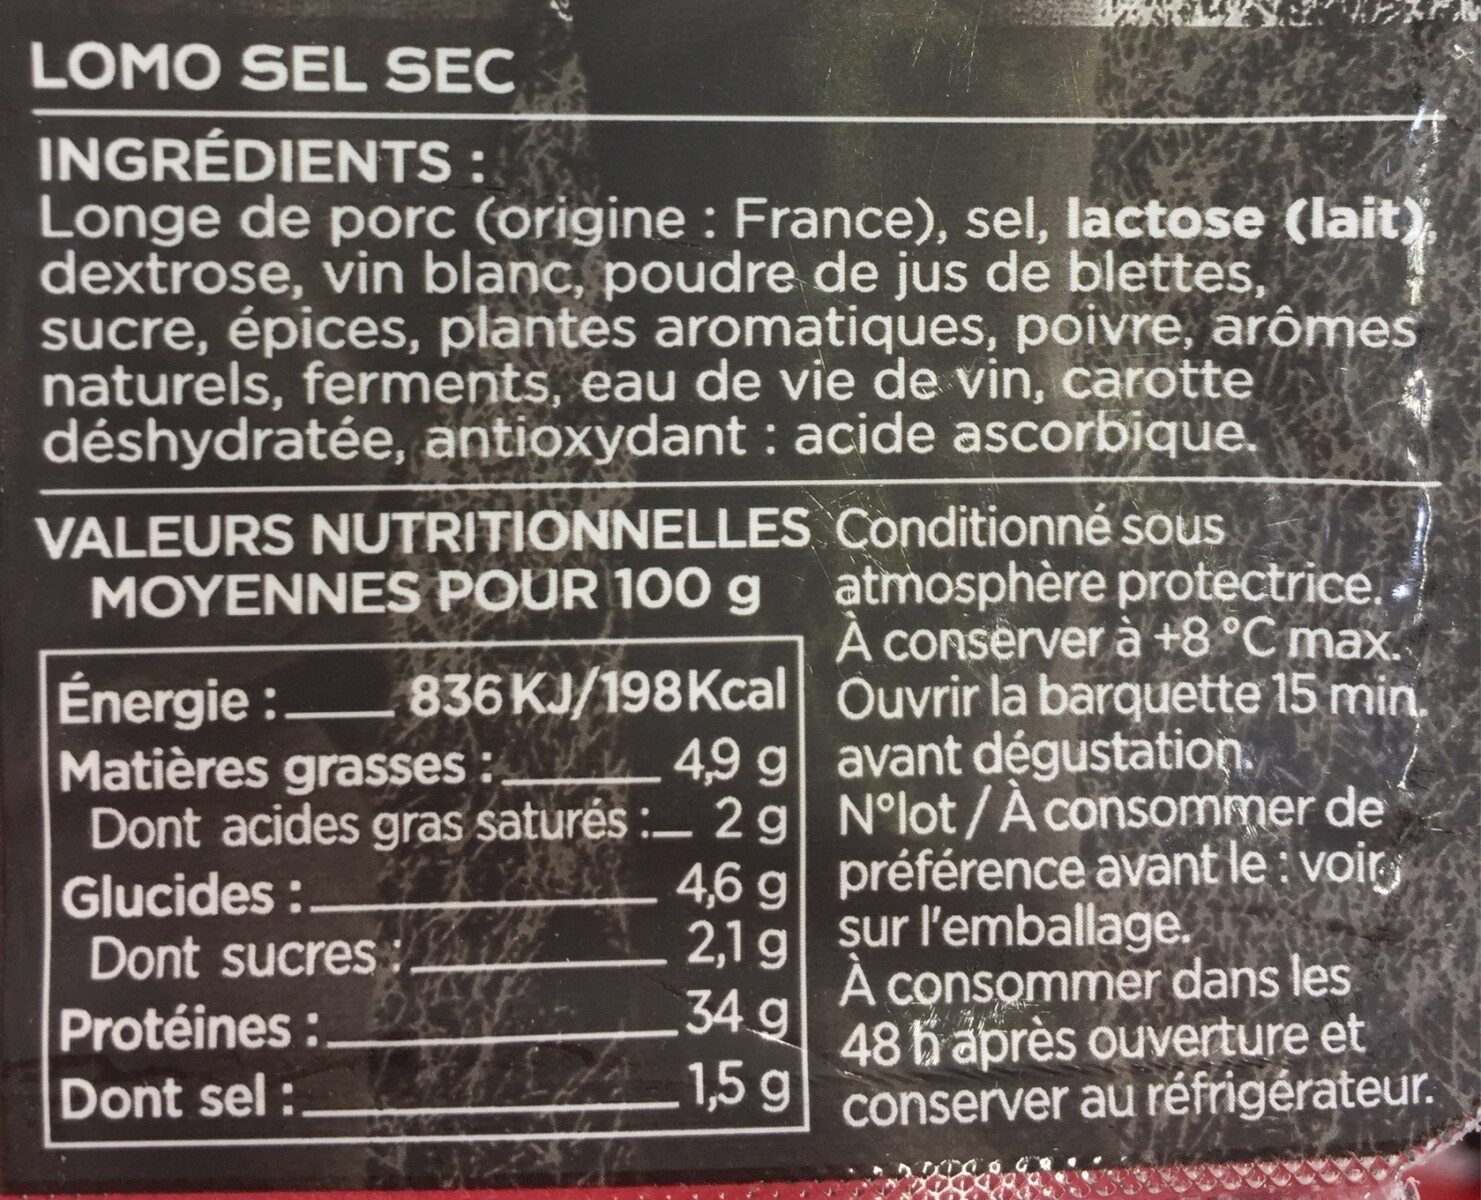 Lomo des pyrenees - Ingrédients